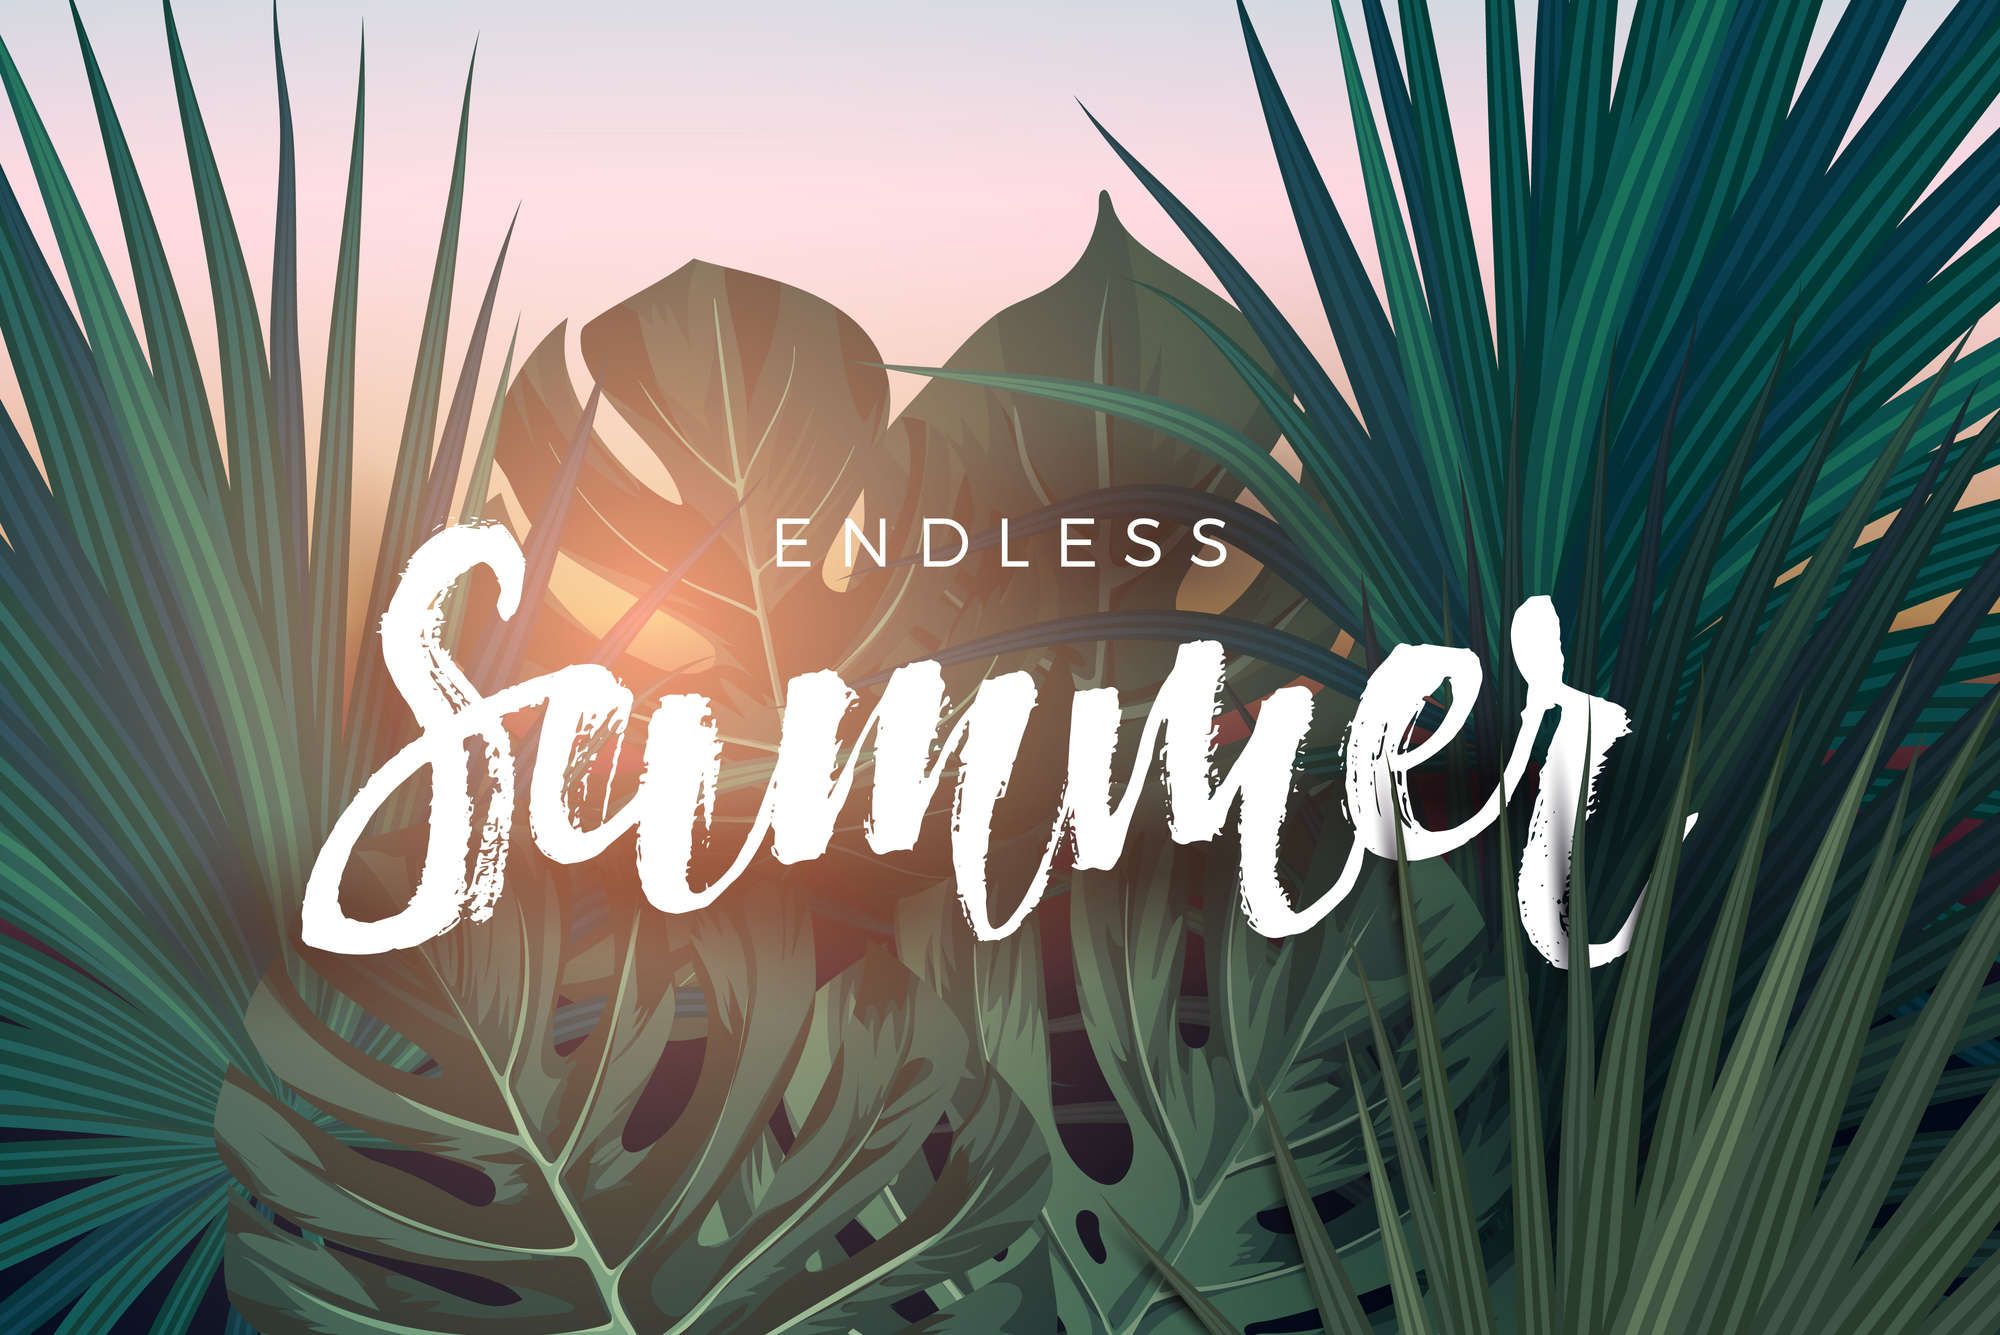             Carta da parati grafica "Endless Summer" su pile testurizzato
        